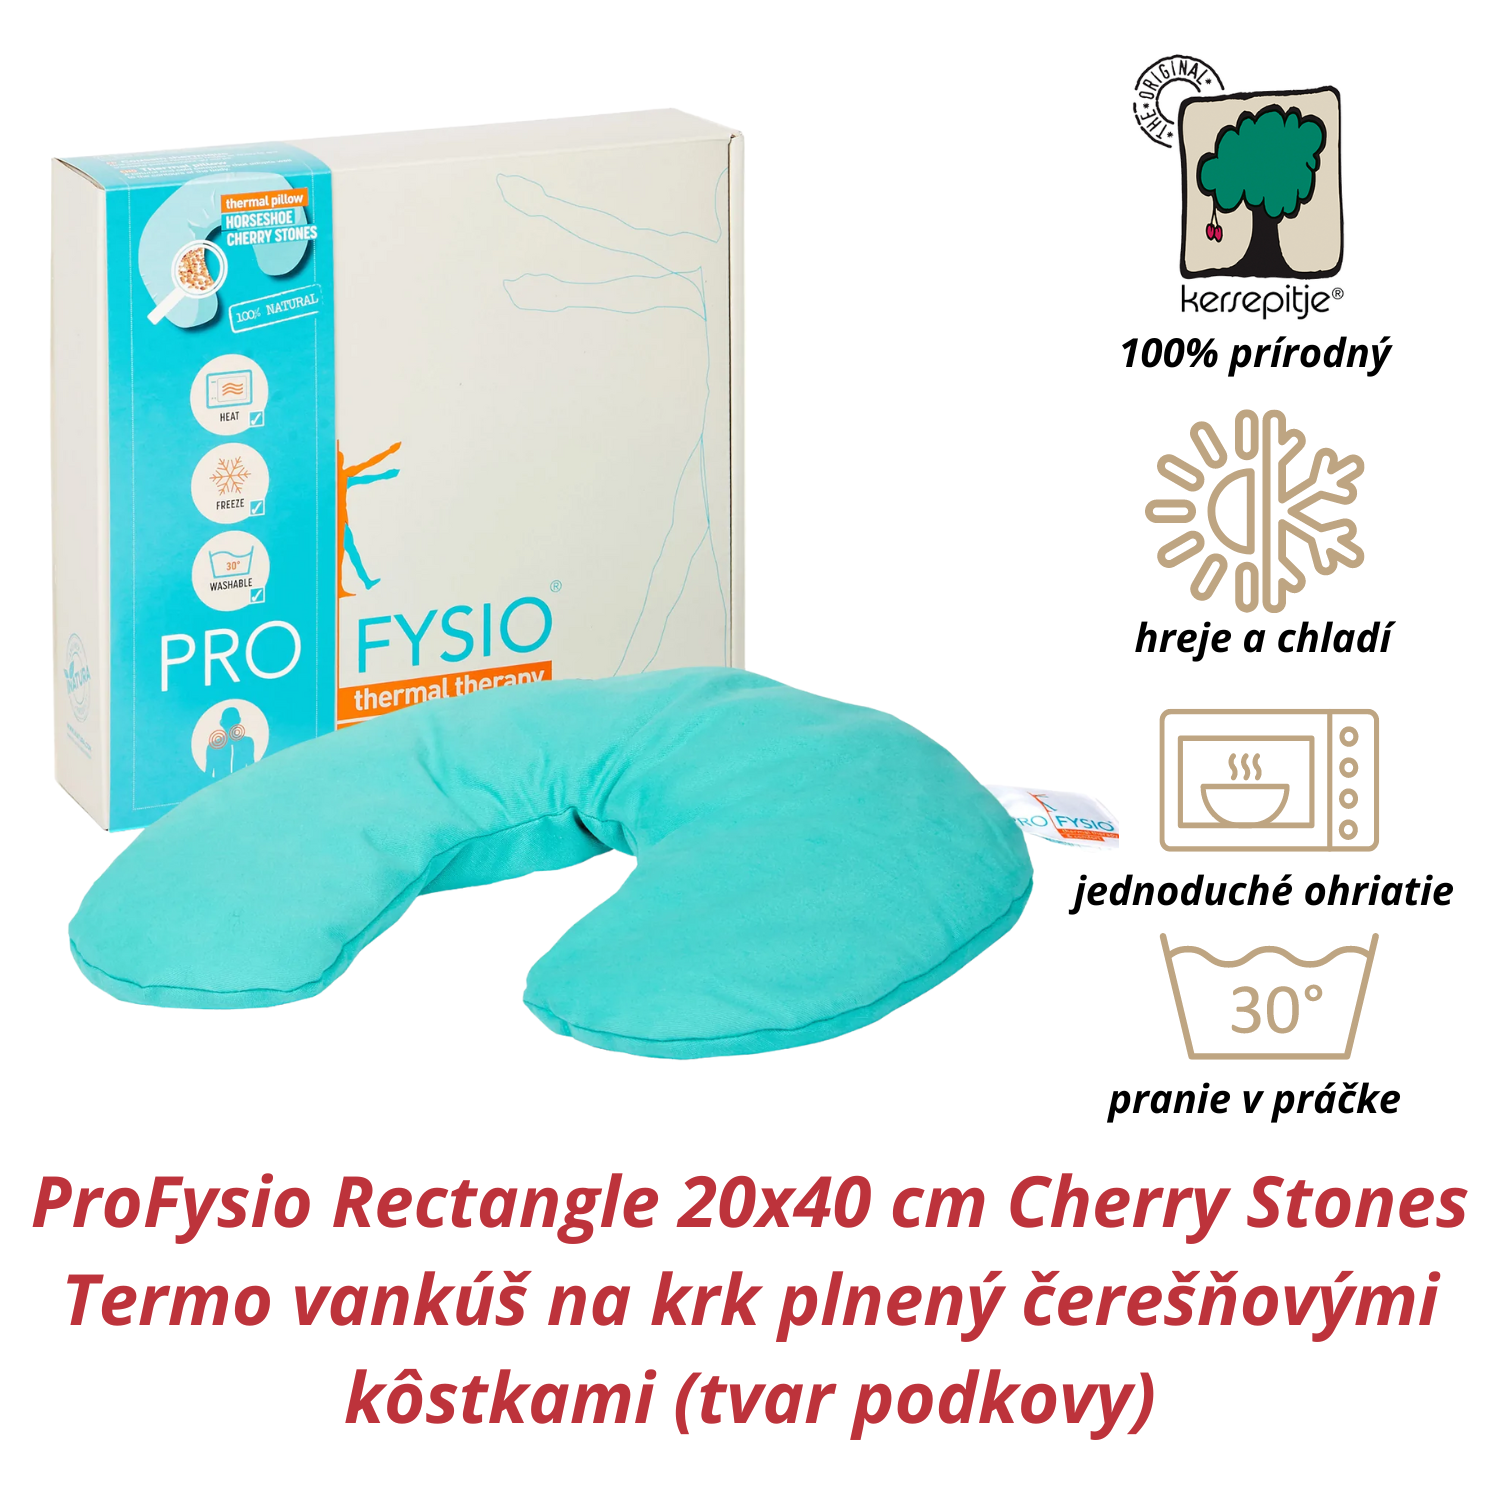 INATURA ProFysio Rectangle 20x40 cm Cherry Stones